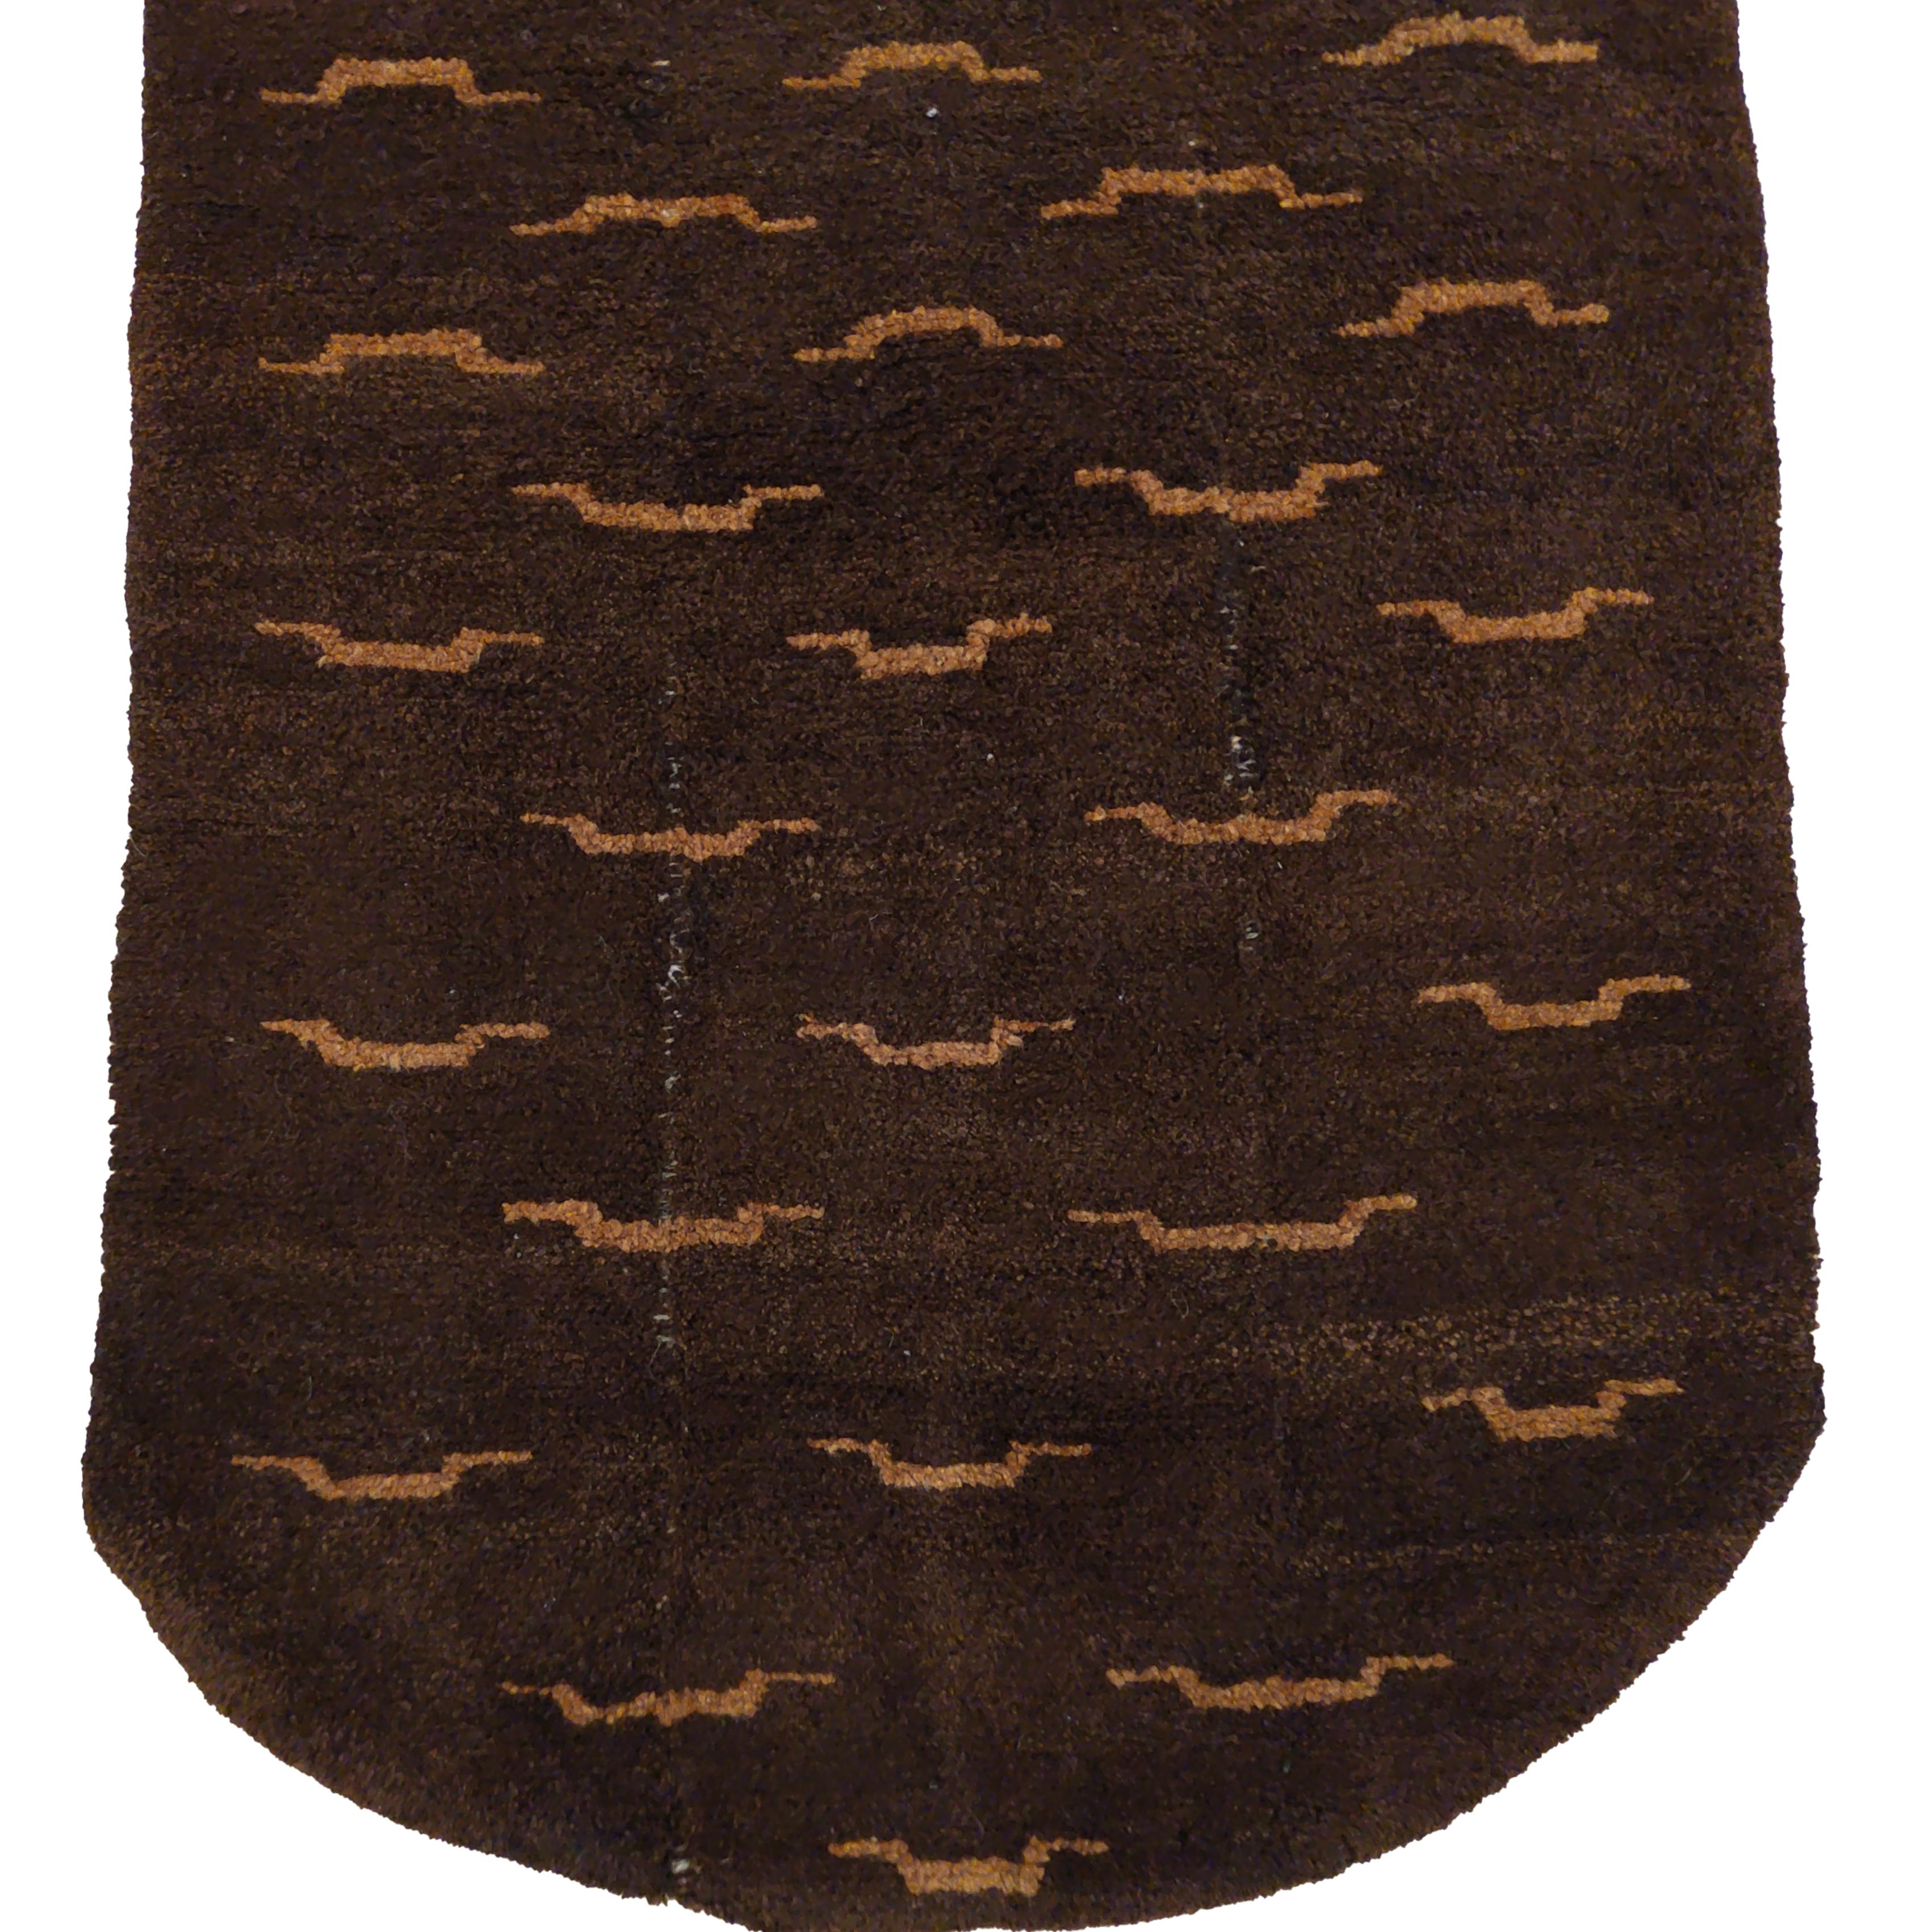 Tsukdruk-Teppiche sind wahrscheinlich die repräsentativsten Beispiele der tibetischen Nomadenwebetradition. Sie sind aus lanolinreicher Hochlandwolle gewebt und werden in schmalen Streifen auf Rückengurtwebstühlen hergestellt. Sie sind Teil der